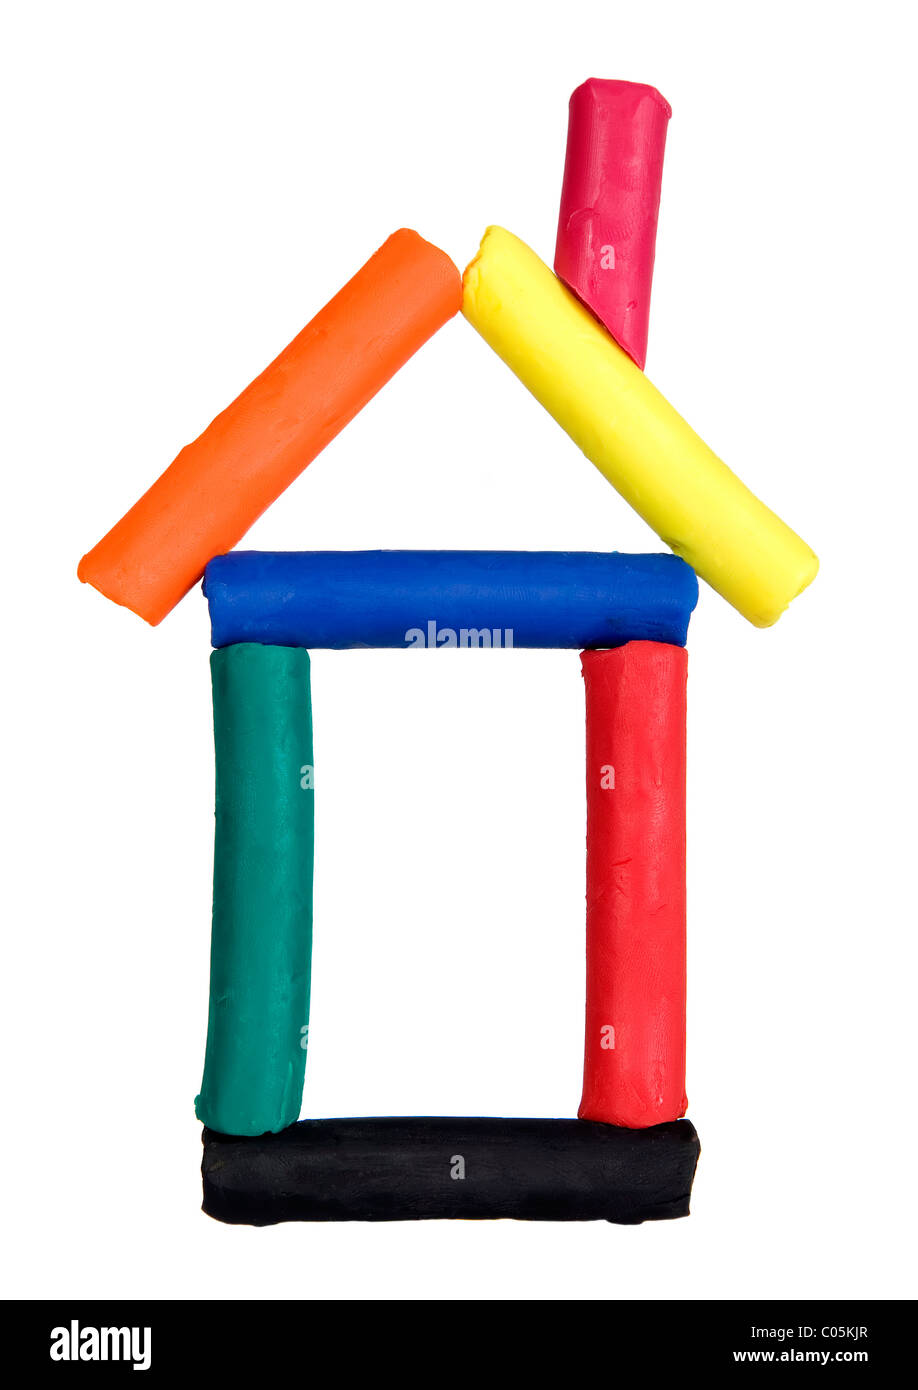 Drôle de maison faite à partir de pâte à modeler colorée, concept enfant jouant Banque D'Images